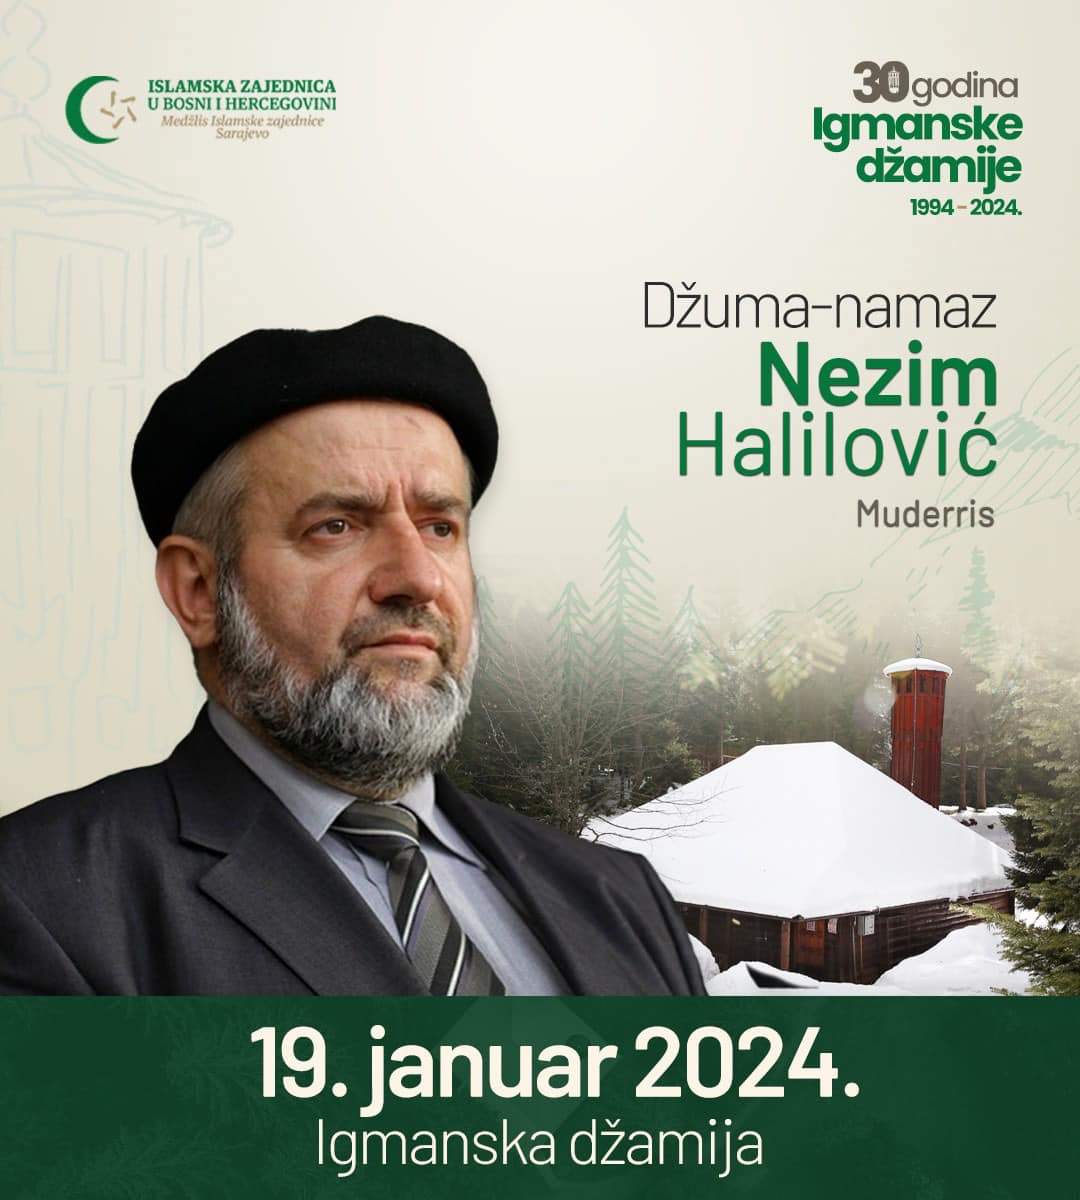 419889044_417823167265872_8406835307806430876_n.jpg - 30 godina od otvorenja Igmanske džamije: Nezim Halilović Muderris